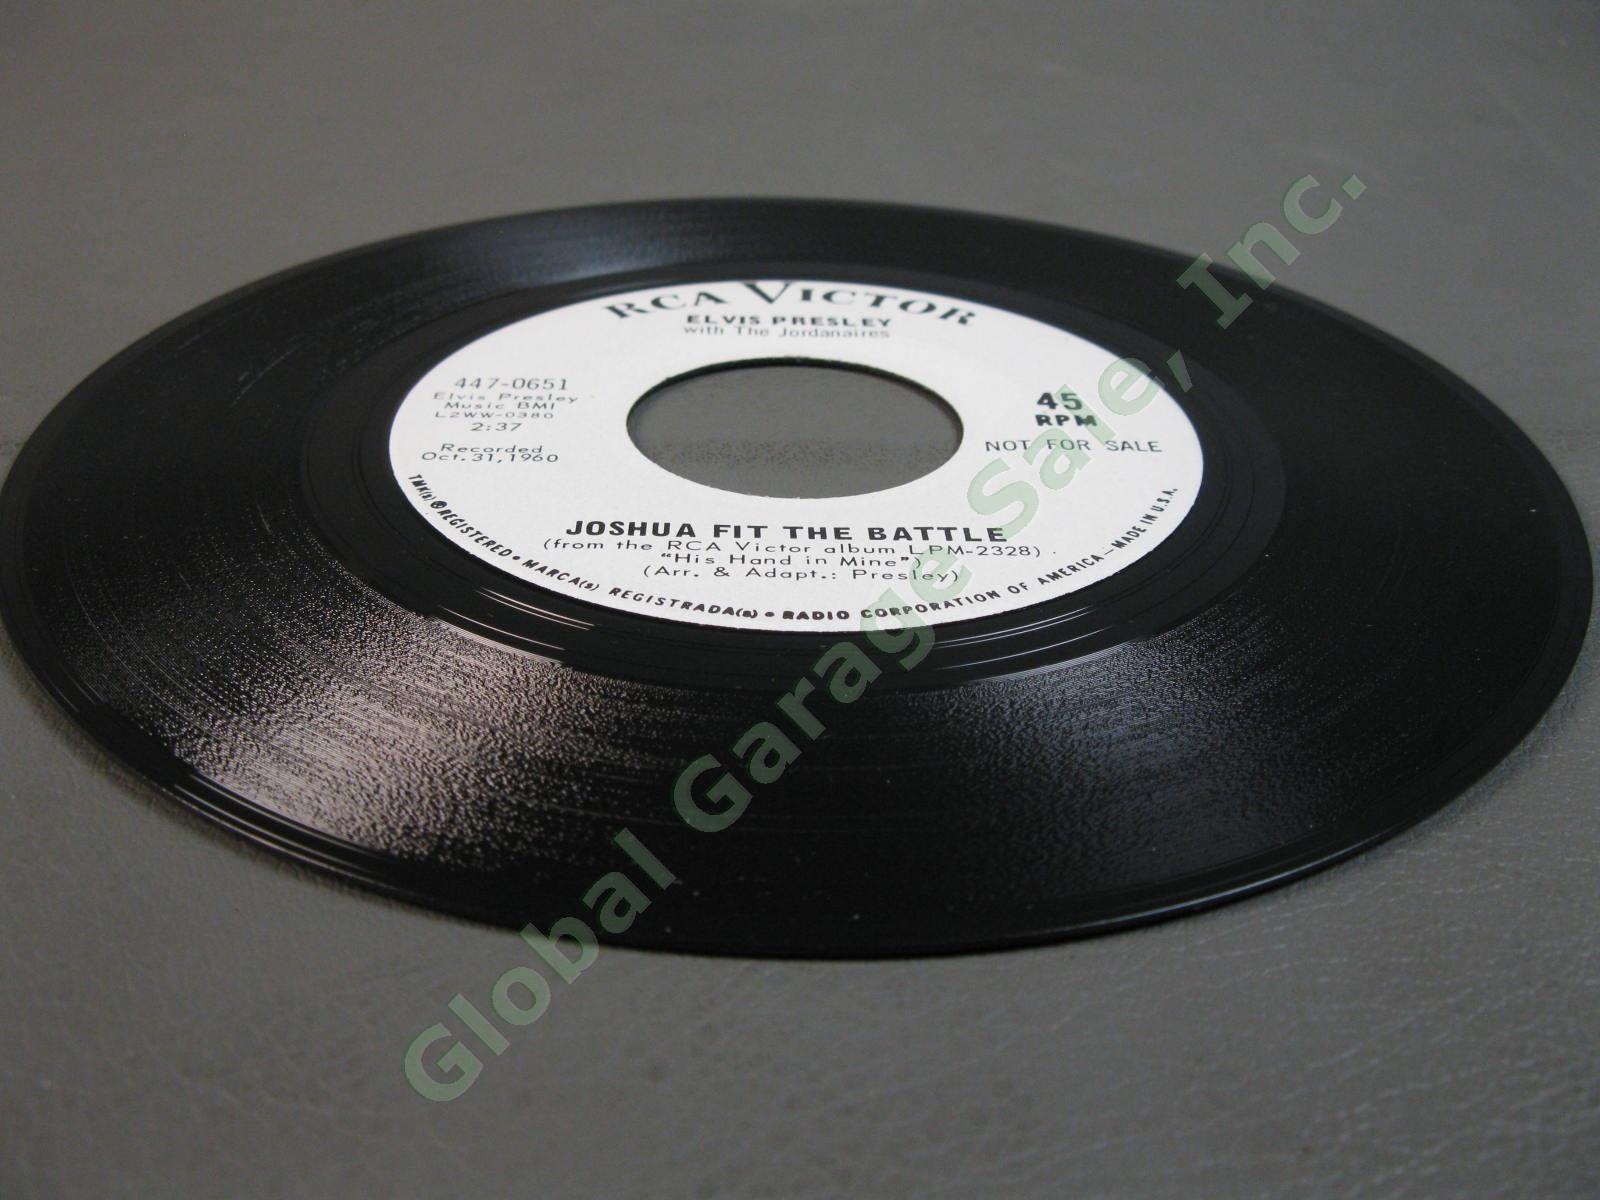 Elvis Presley 45RPM 7" White Label PROMO Record Joshua Fit The Battle 447-0651 6